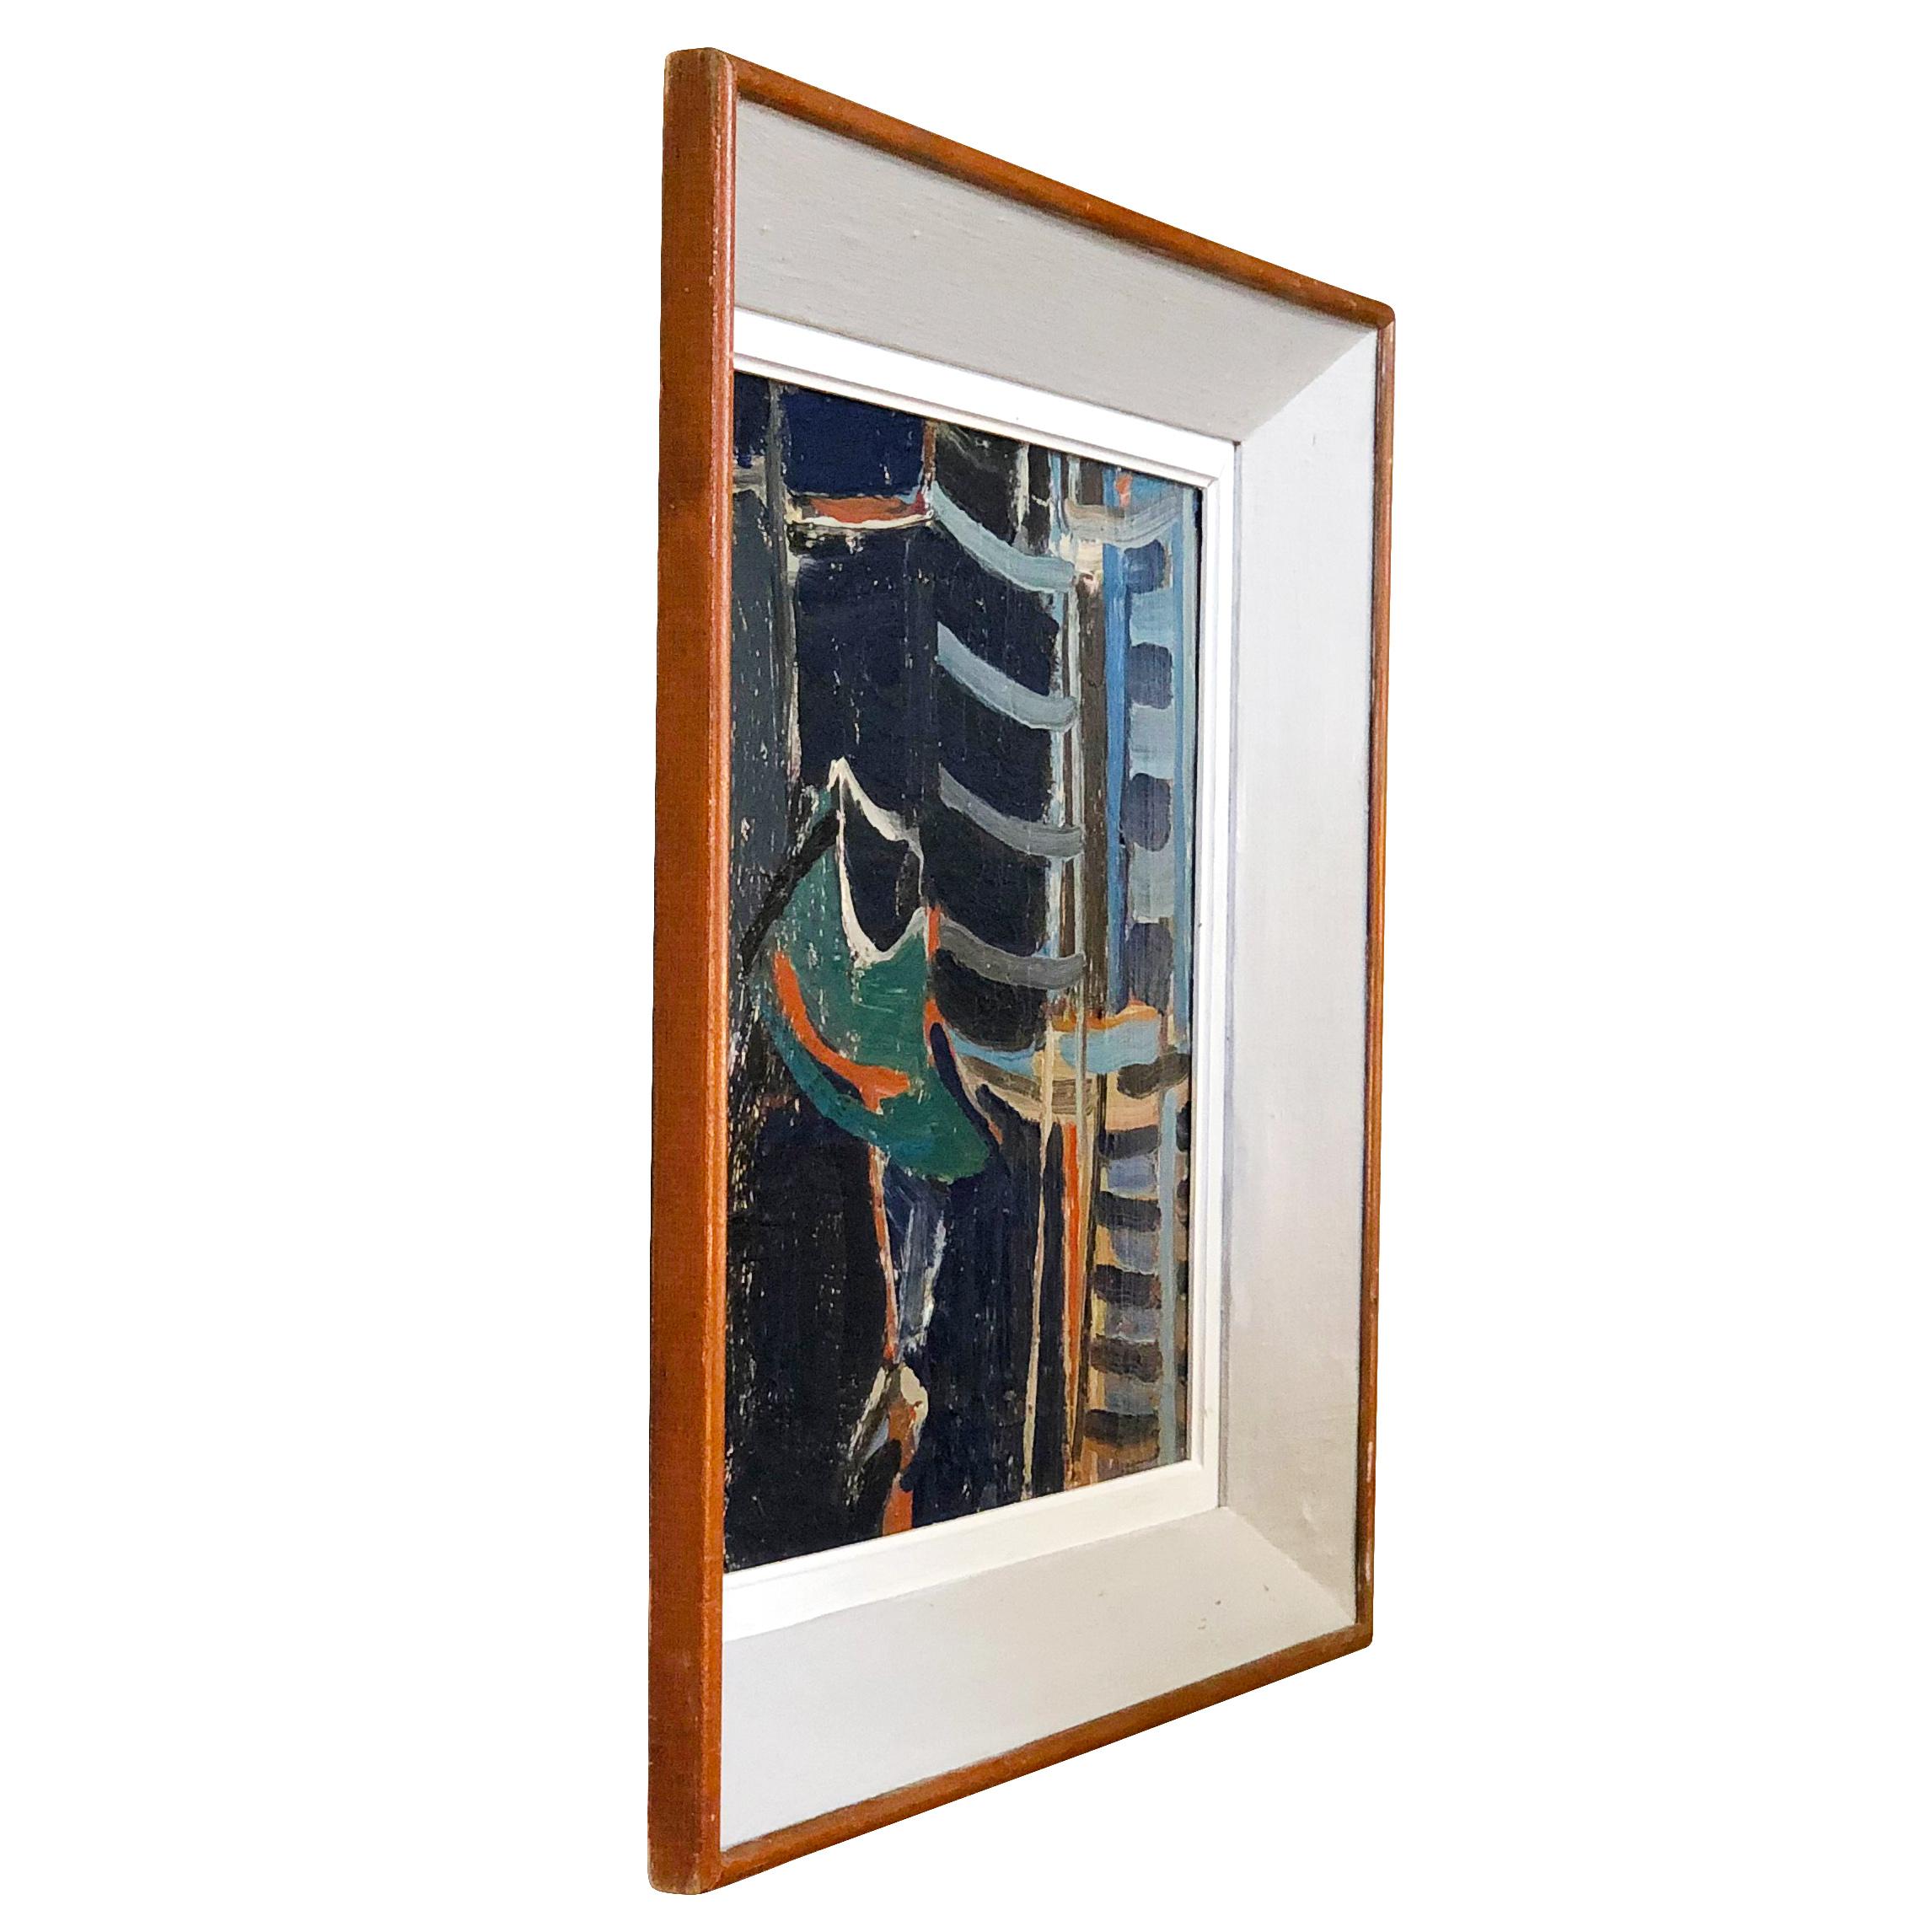 Un portrait abstrait français de livres, bleu, vert, huile sur bois dans une toile de Daniel Clesse, peint en France, signé et daté en 1964.

Mesures : Sans le cadre : 18